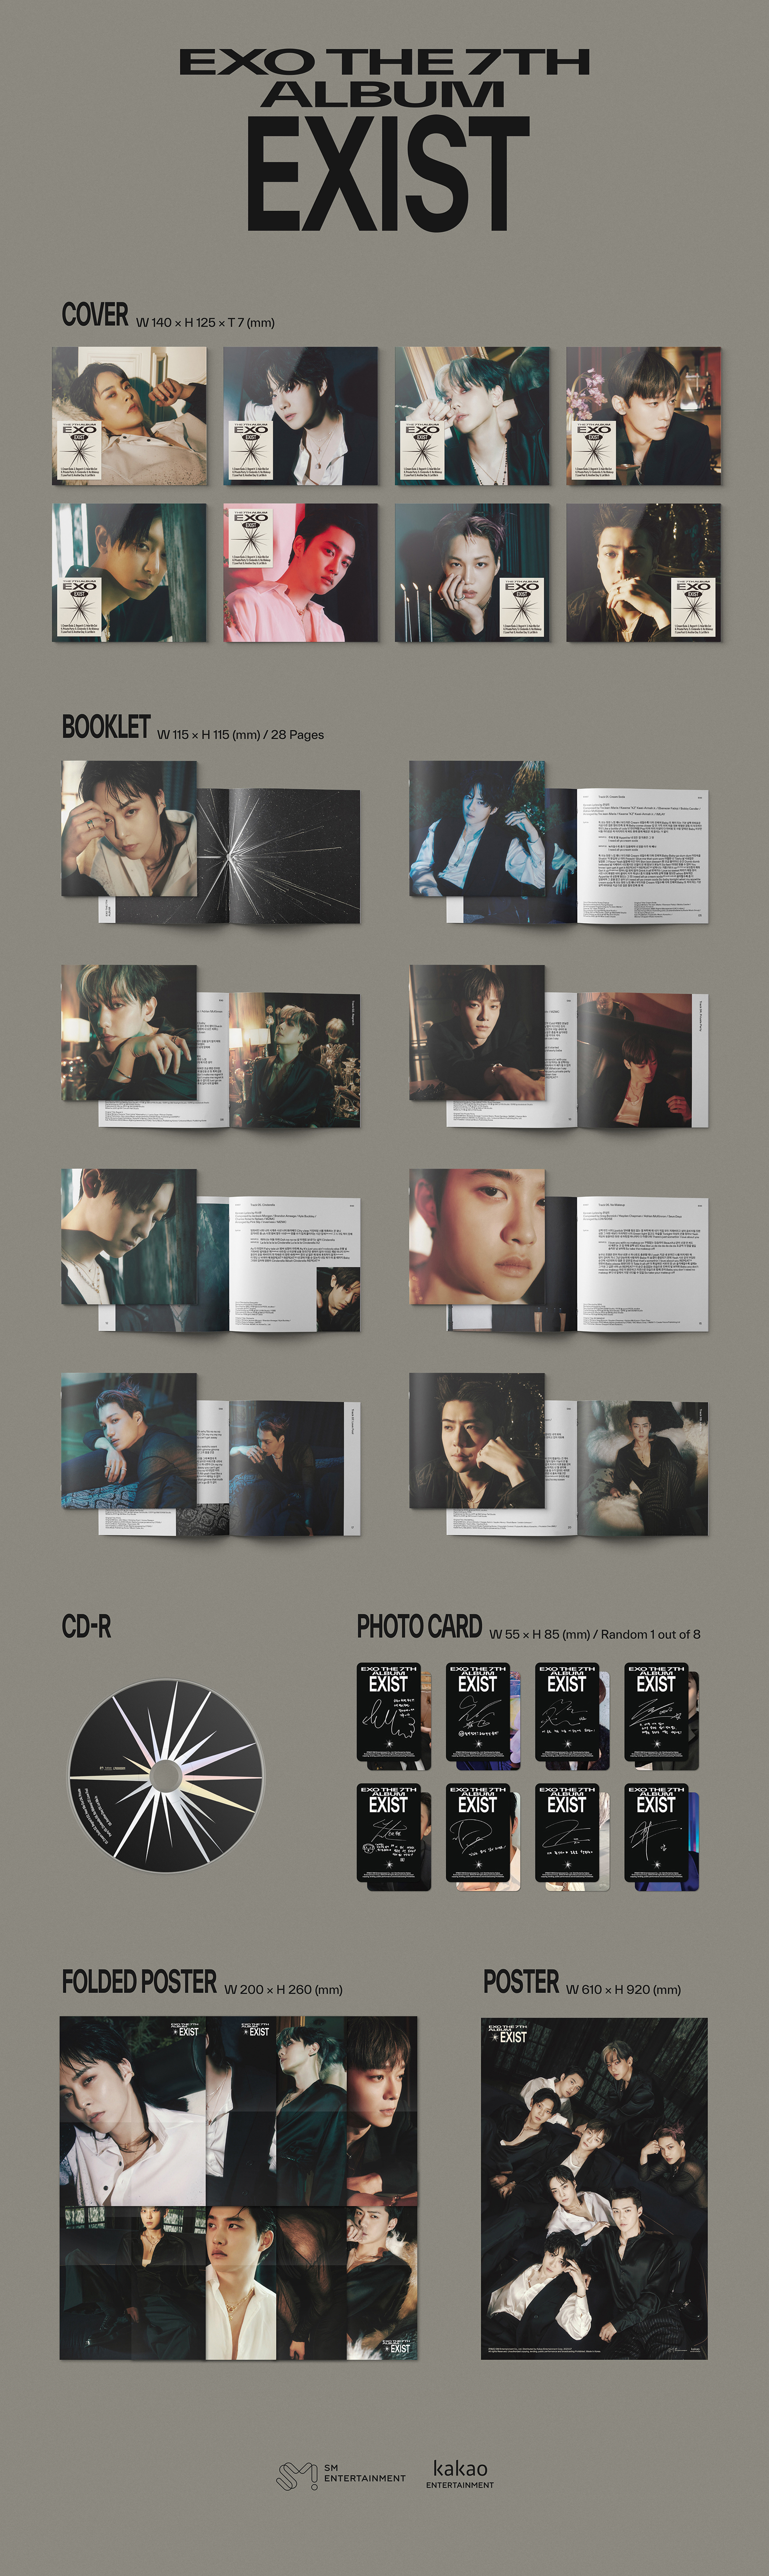 ktown4u.com : EXO - The 7th Album [EXIST] (Digipack Ver.) (Random